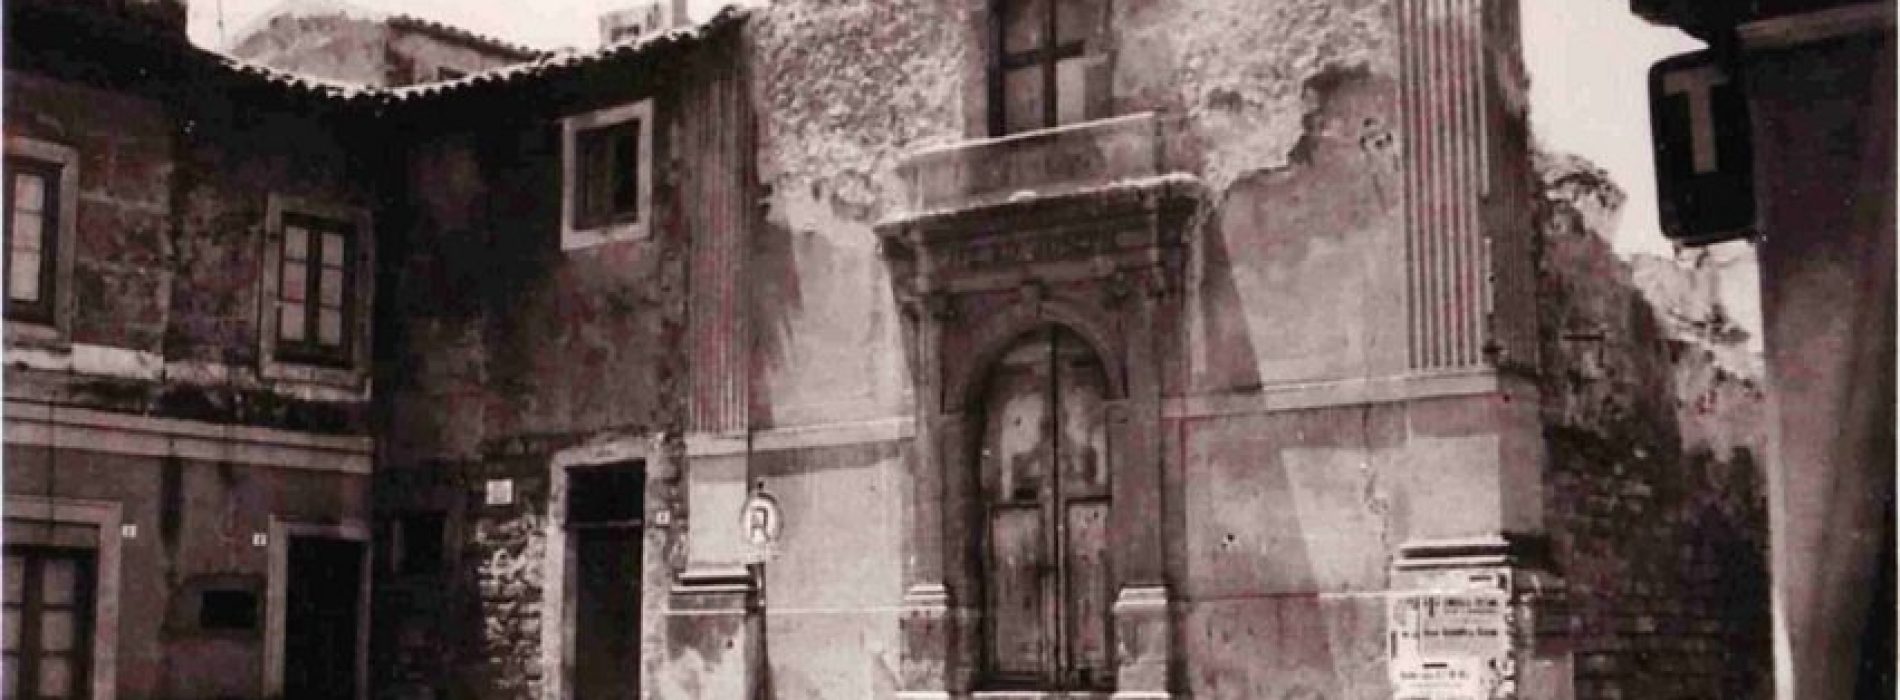 L’ex chiesa di SAN GIUSEPPE- La storia e le foto di una chiesa non più esistente